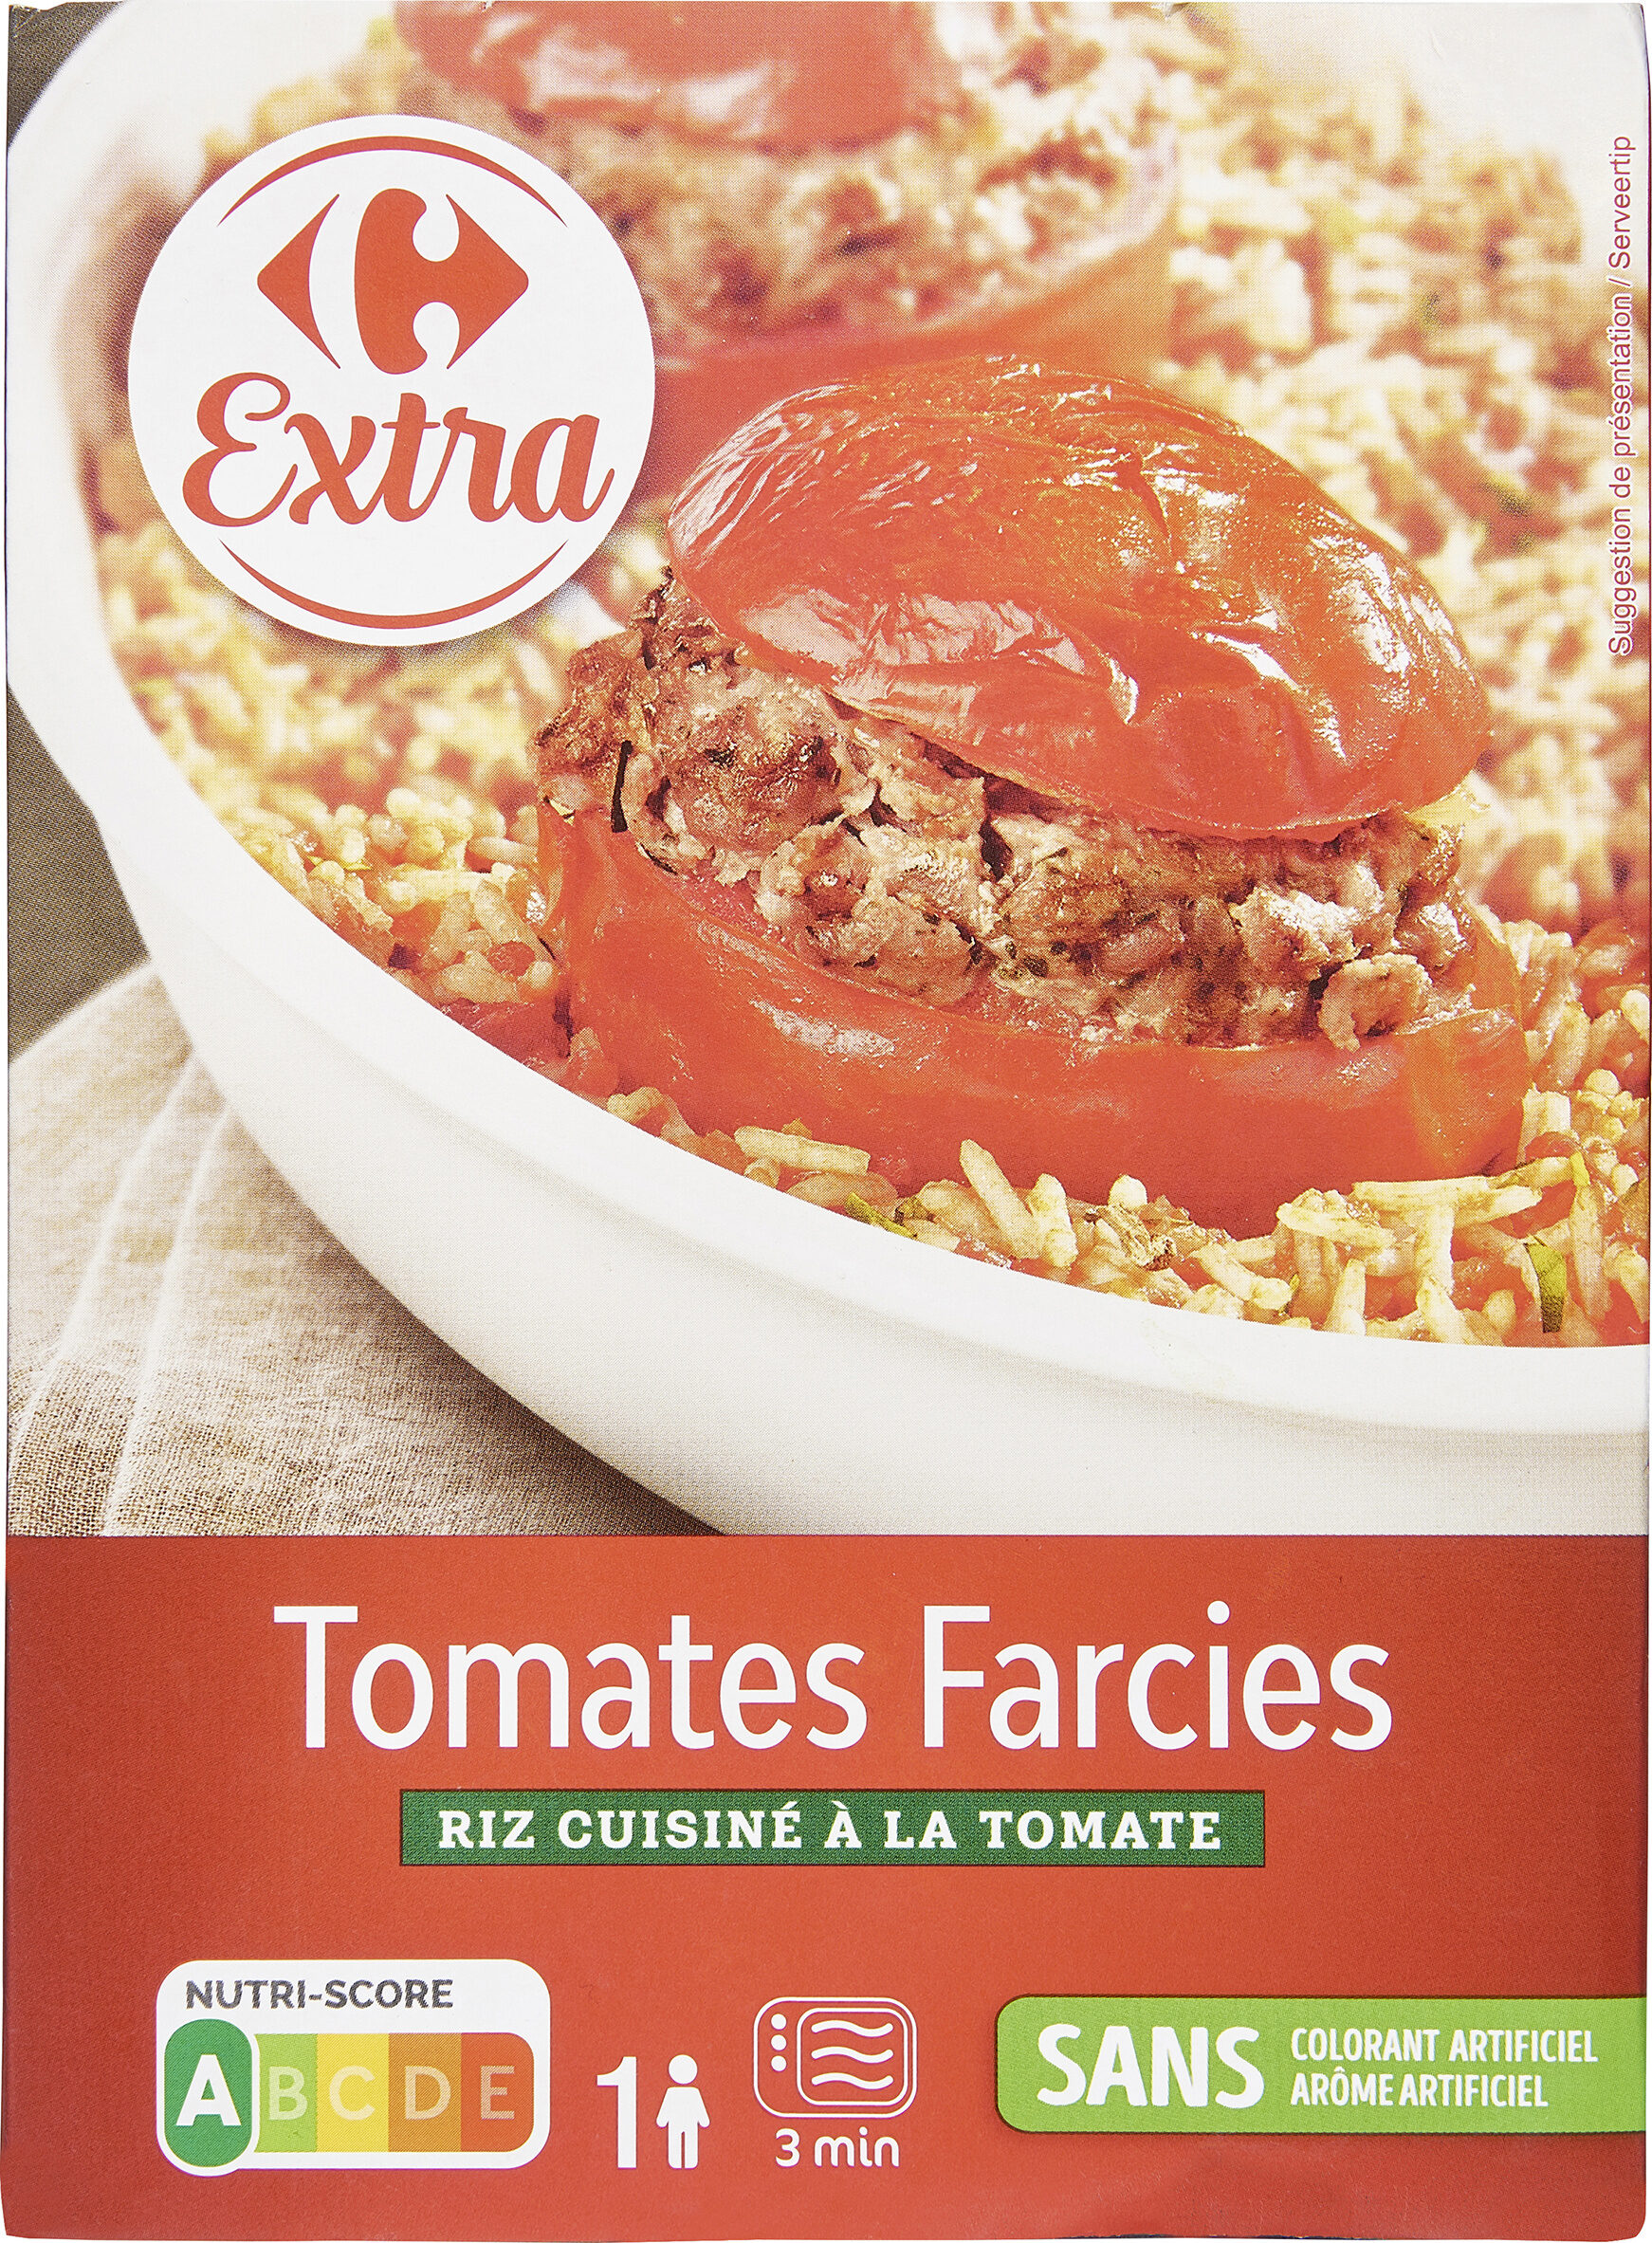 Tomates Farcies Riz cuisiné à la tomate - Product - fr